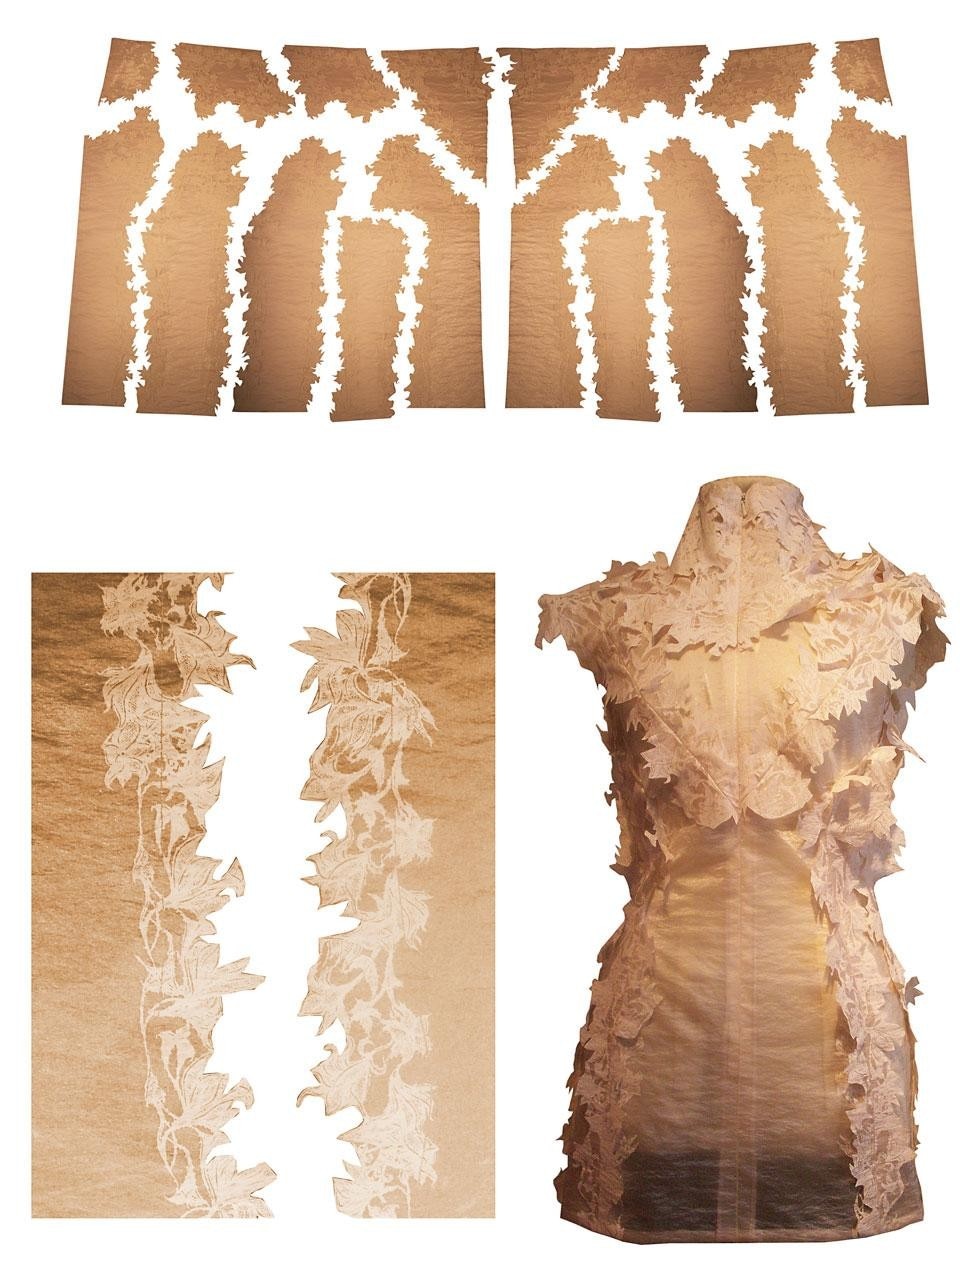 Sfruttando innovative
tecniche di taglio, Liu ha
messo a punto una soluzione
per ridurre gli scarti di stoffa
(www.stique.com)